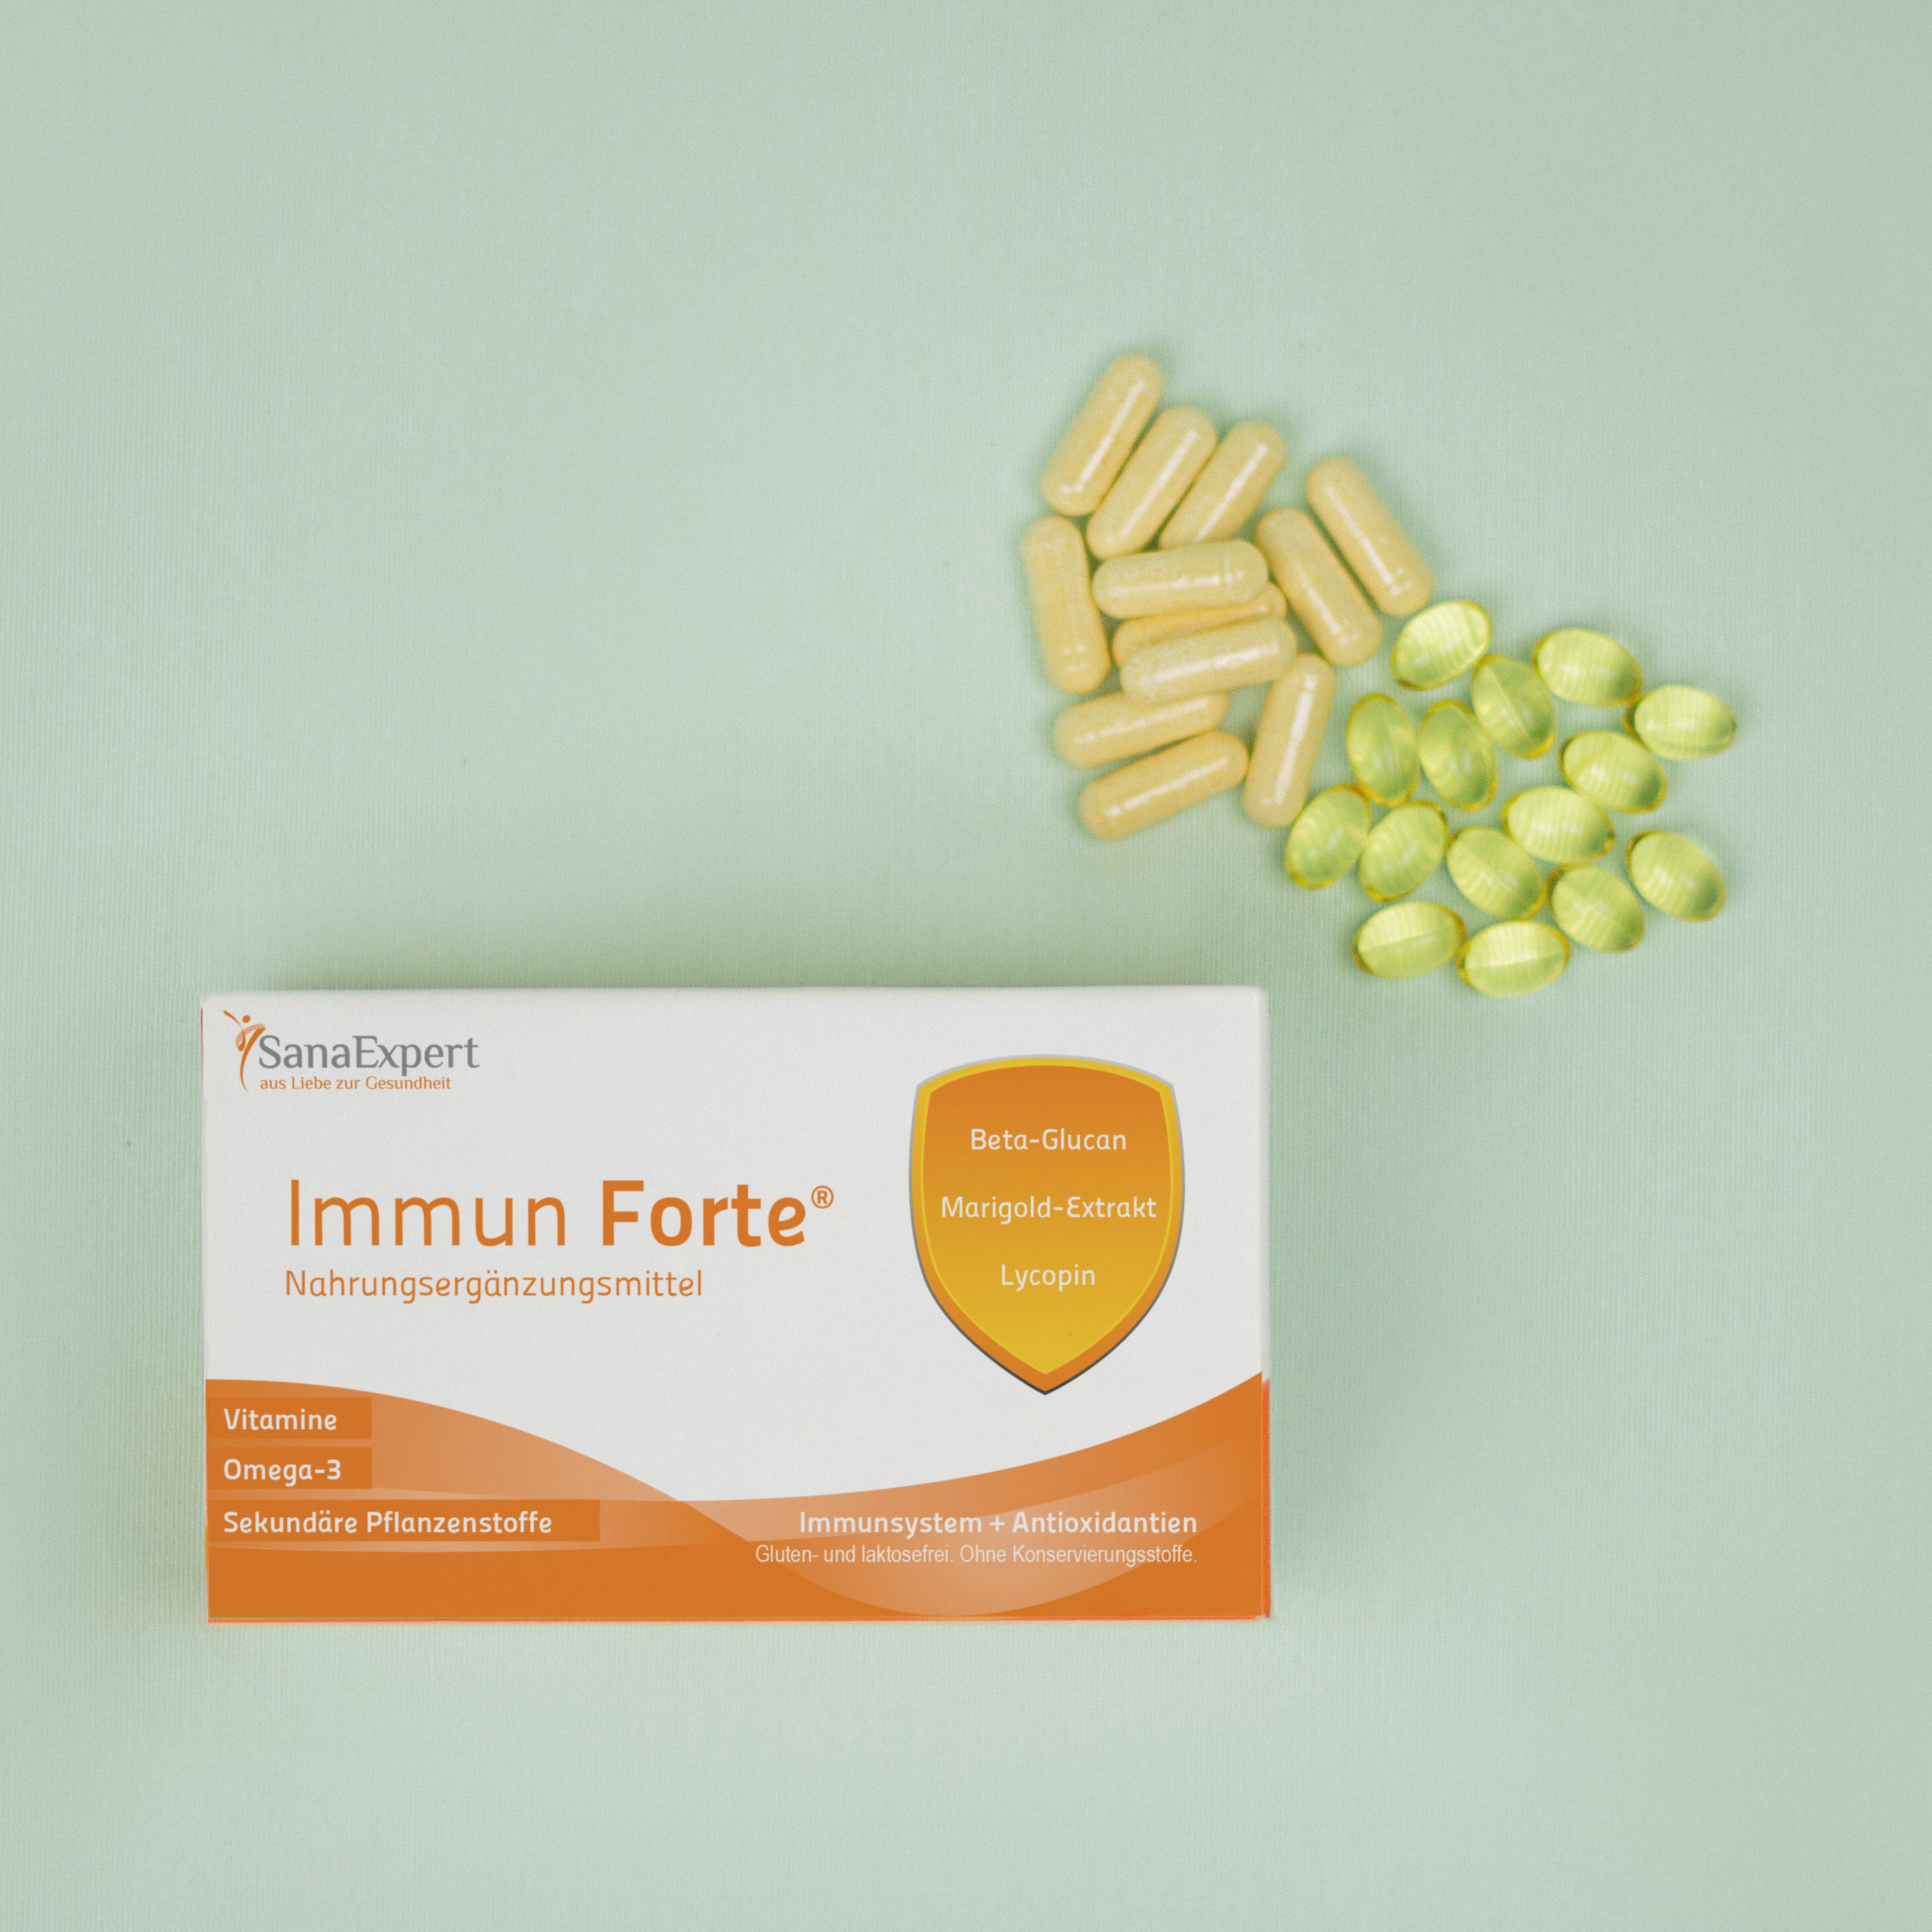 Packung von SanaExpert Immun Forte auf grünem Hintergrund mit einer Streuung von gelben und weißen Kapseln daneben, betont die Gesundheitsvorteile der Inhaltsstoffe wie Beta-Glucan und Lycopin.